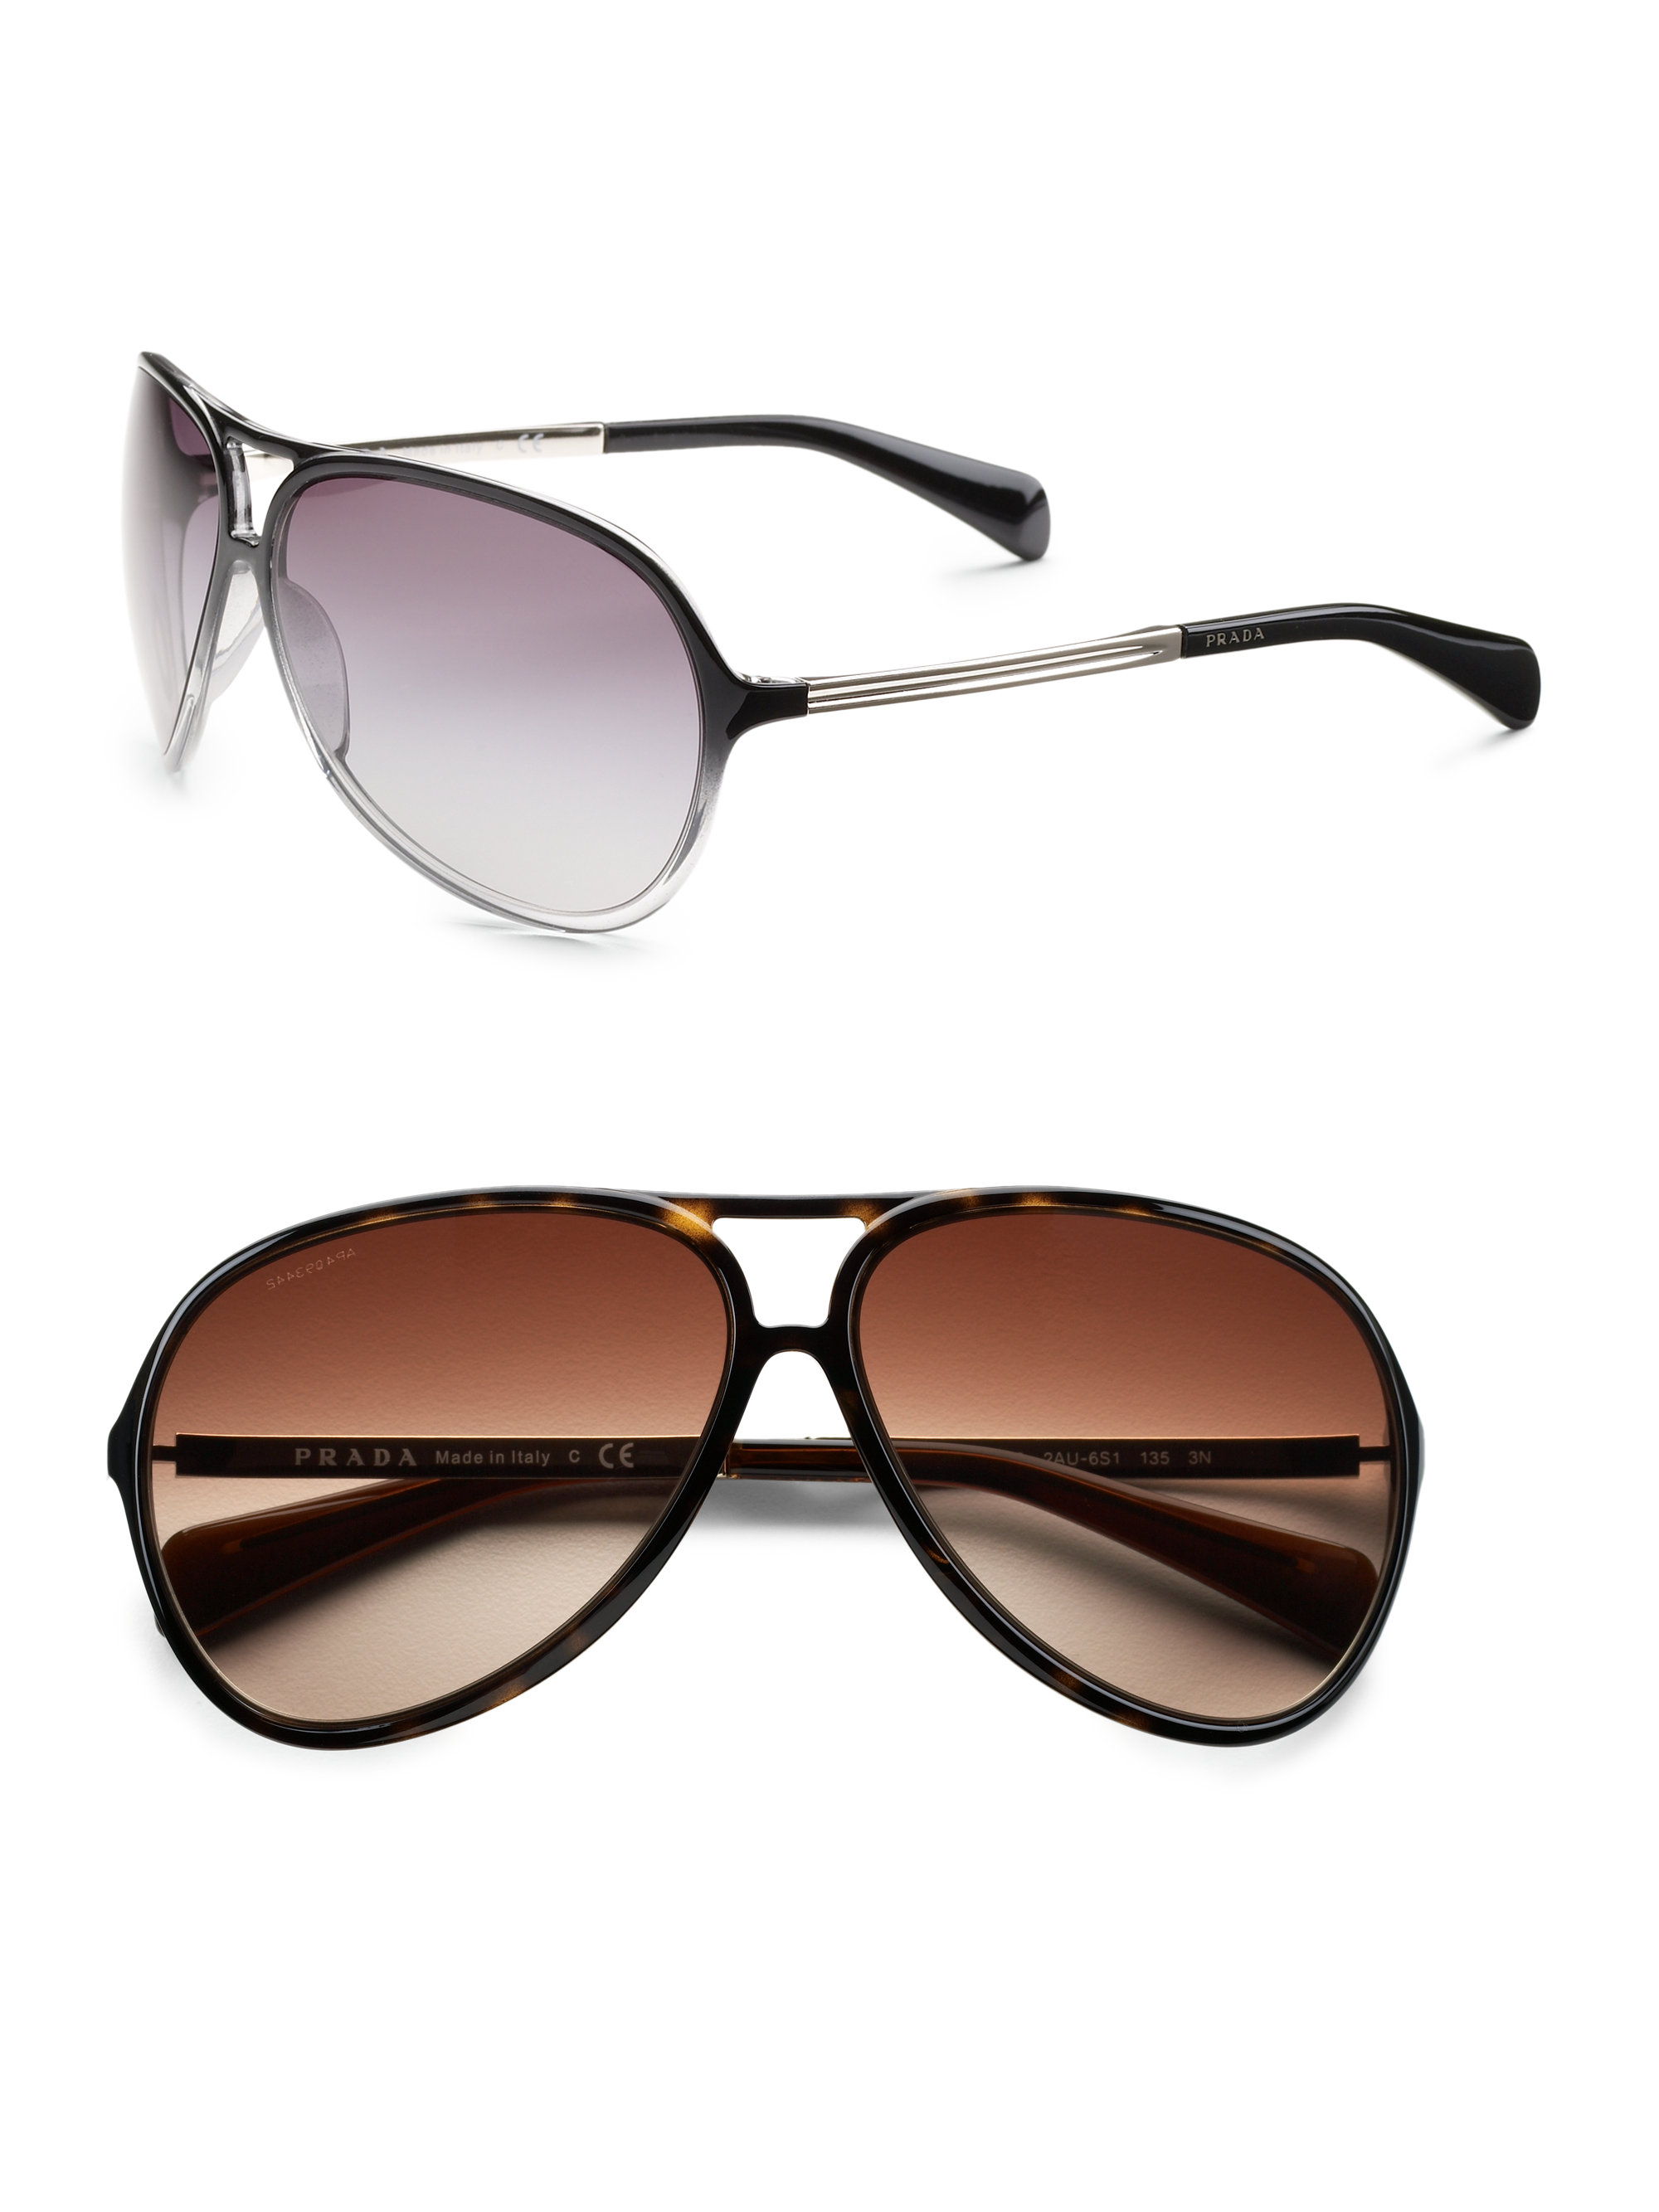 Lyst - Prada Aviator Sunglasses in Brown for Men